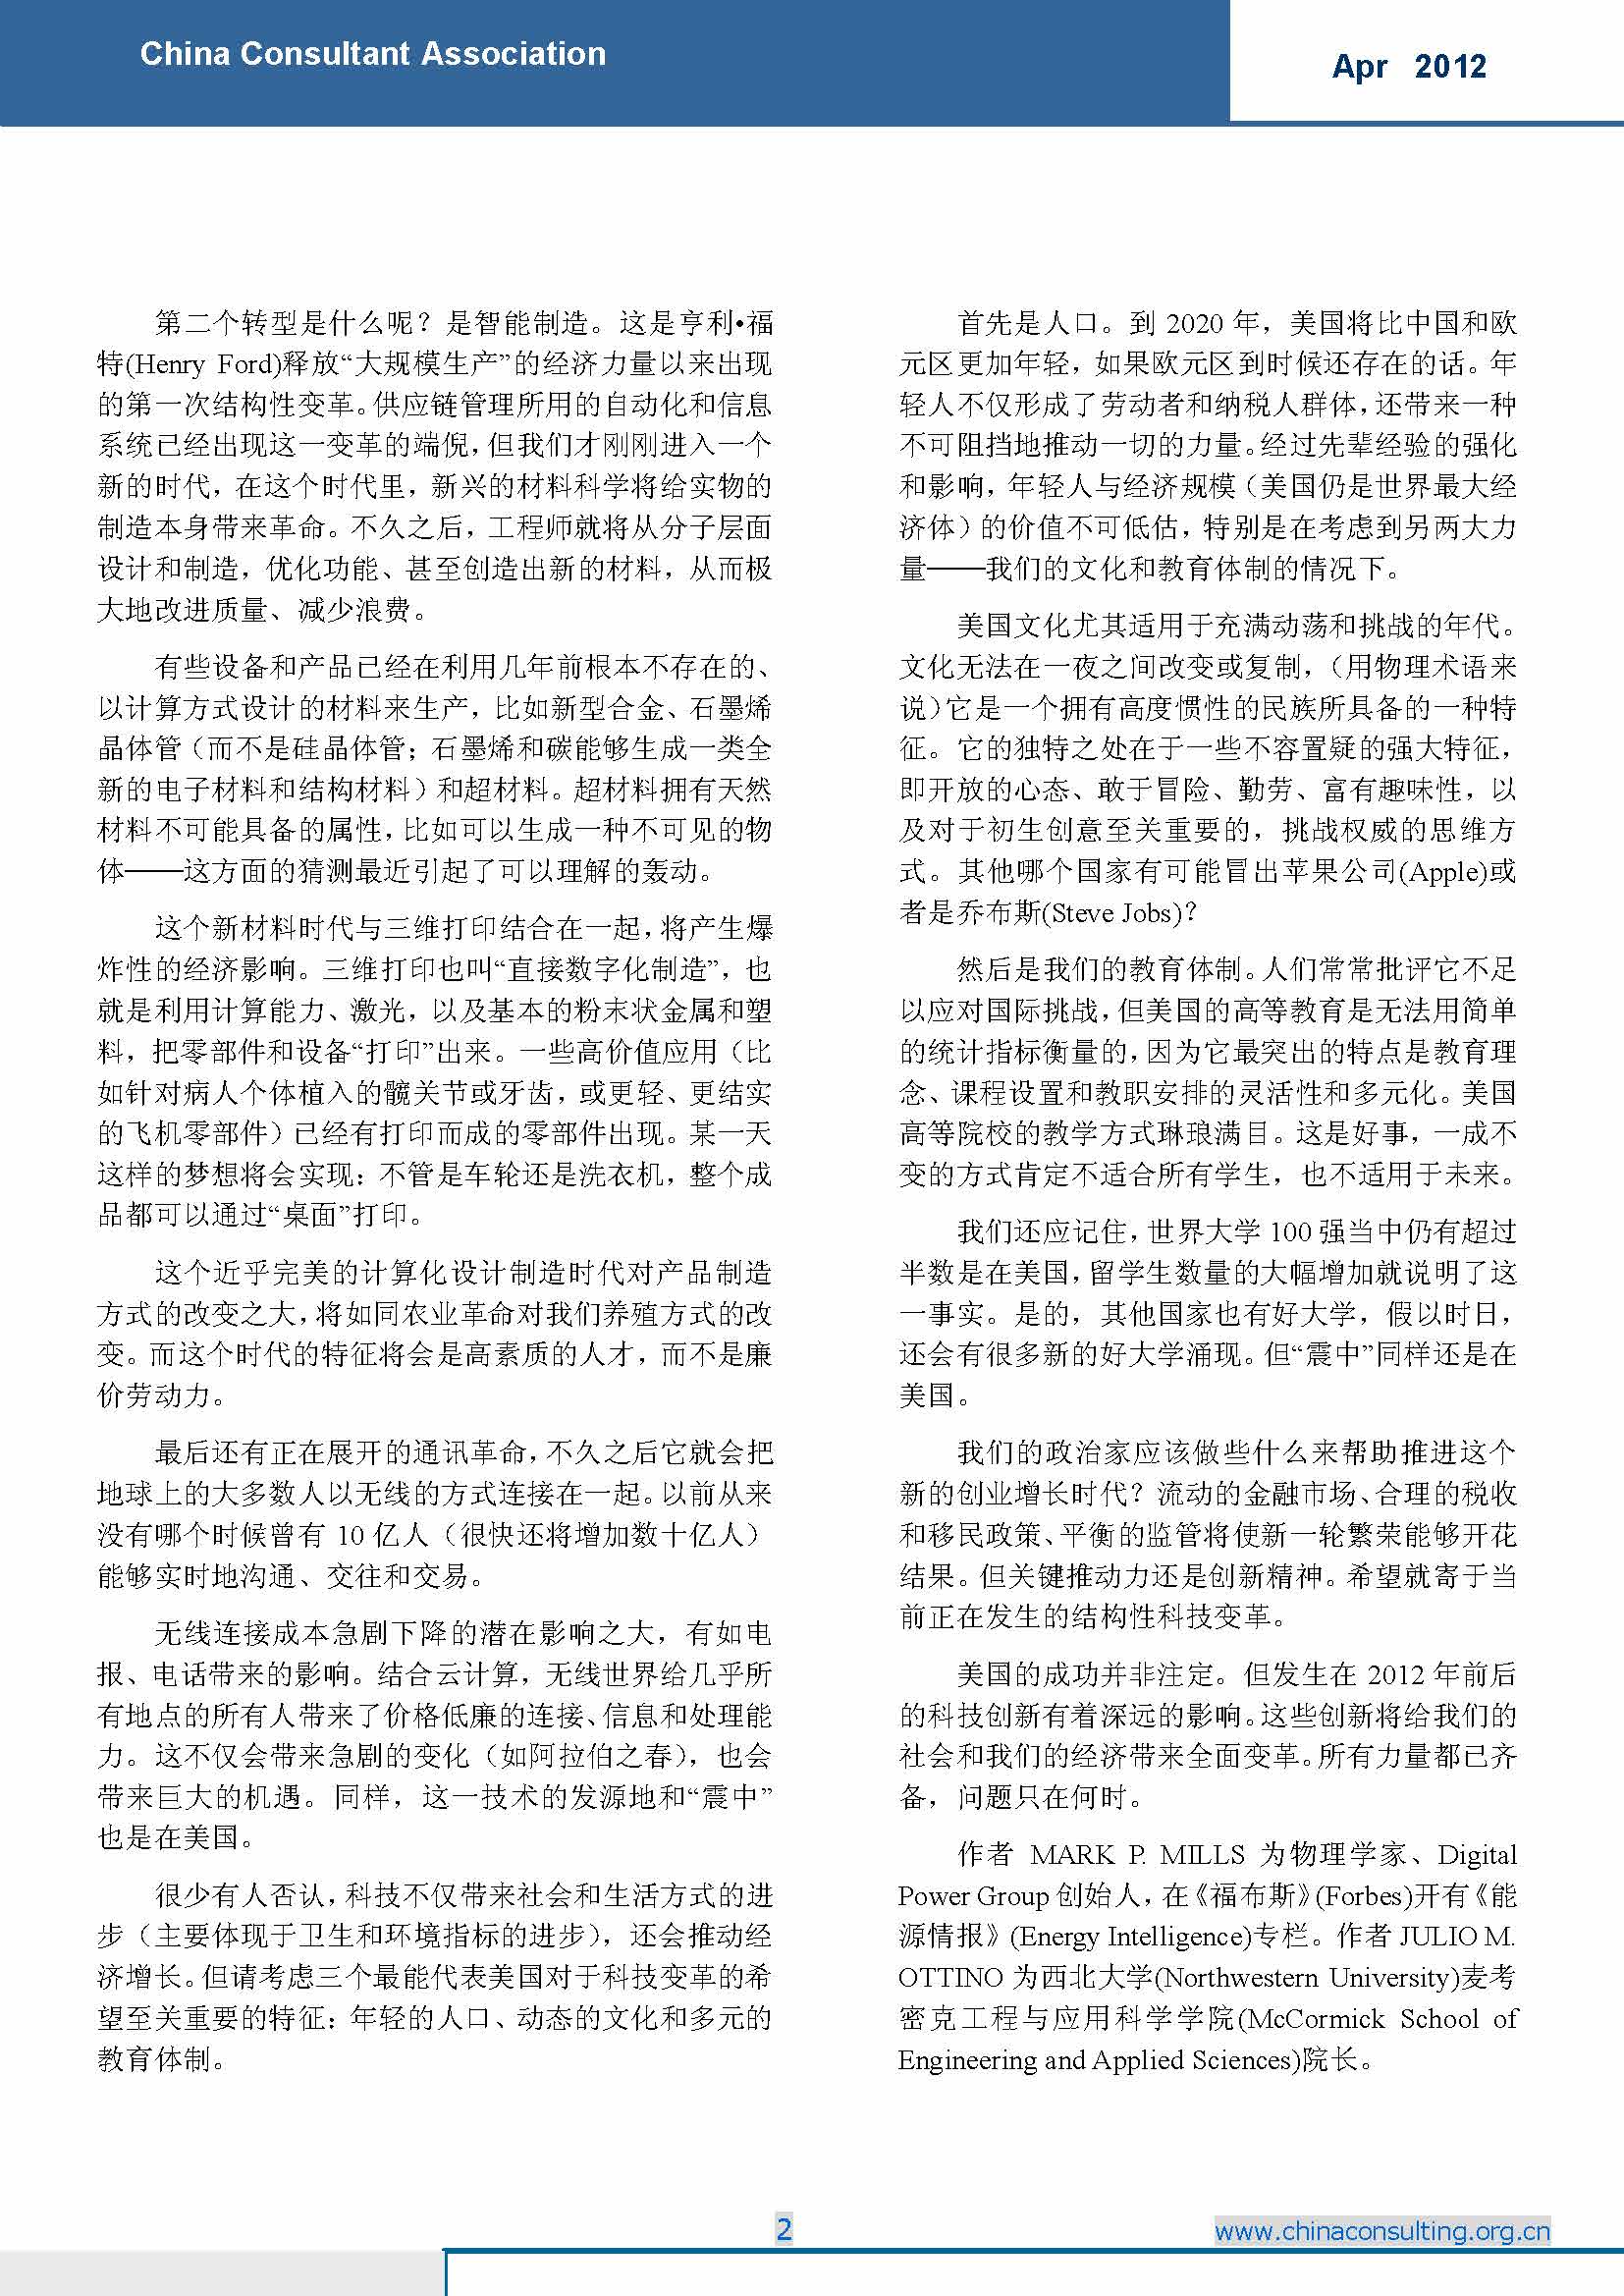 6中国科技咨询协会国际快讯（第六期）_页面_04.jpg